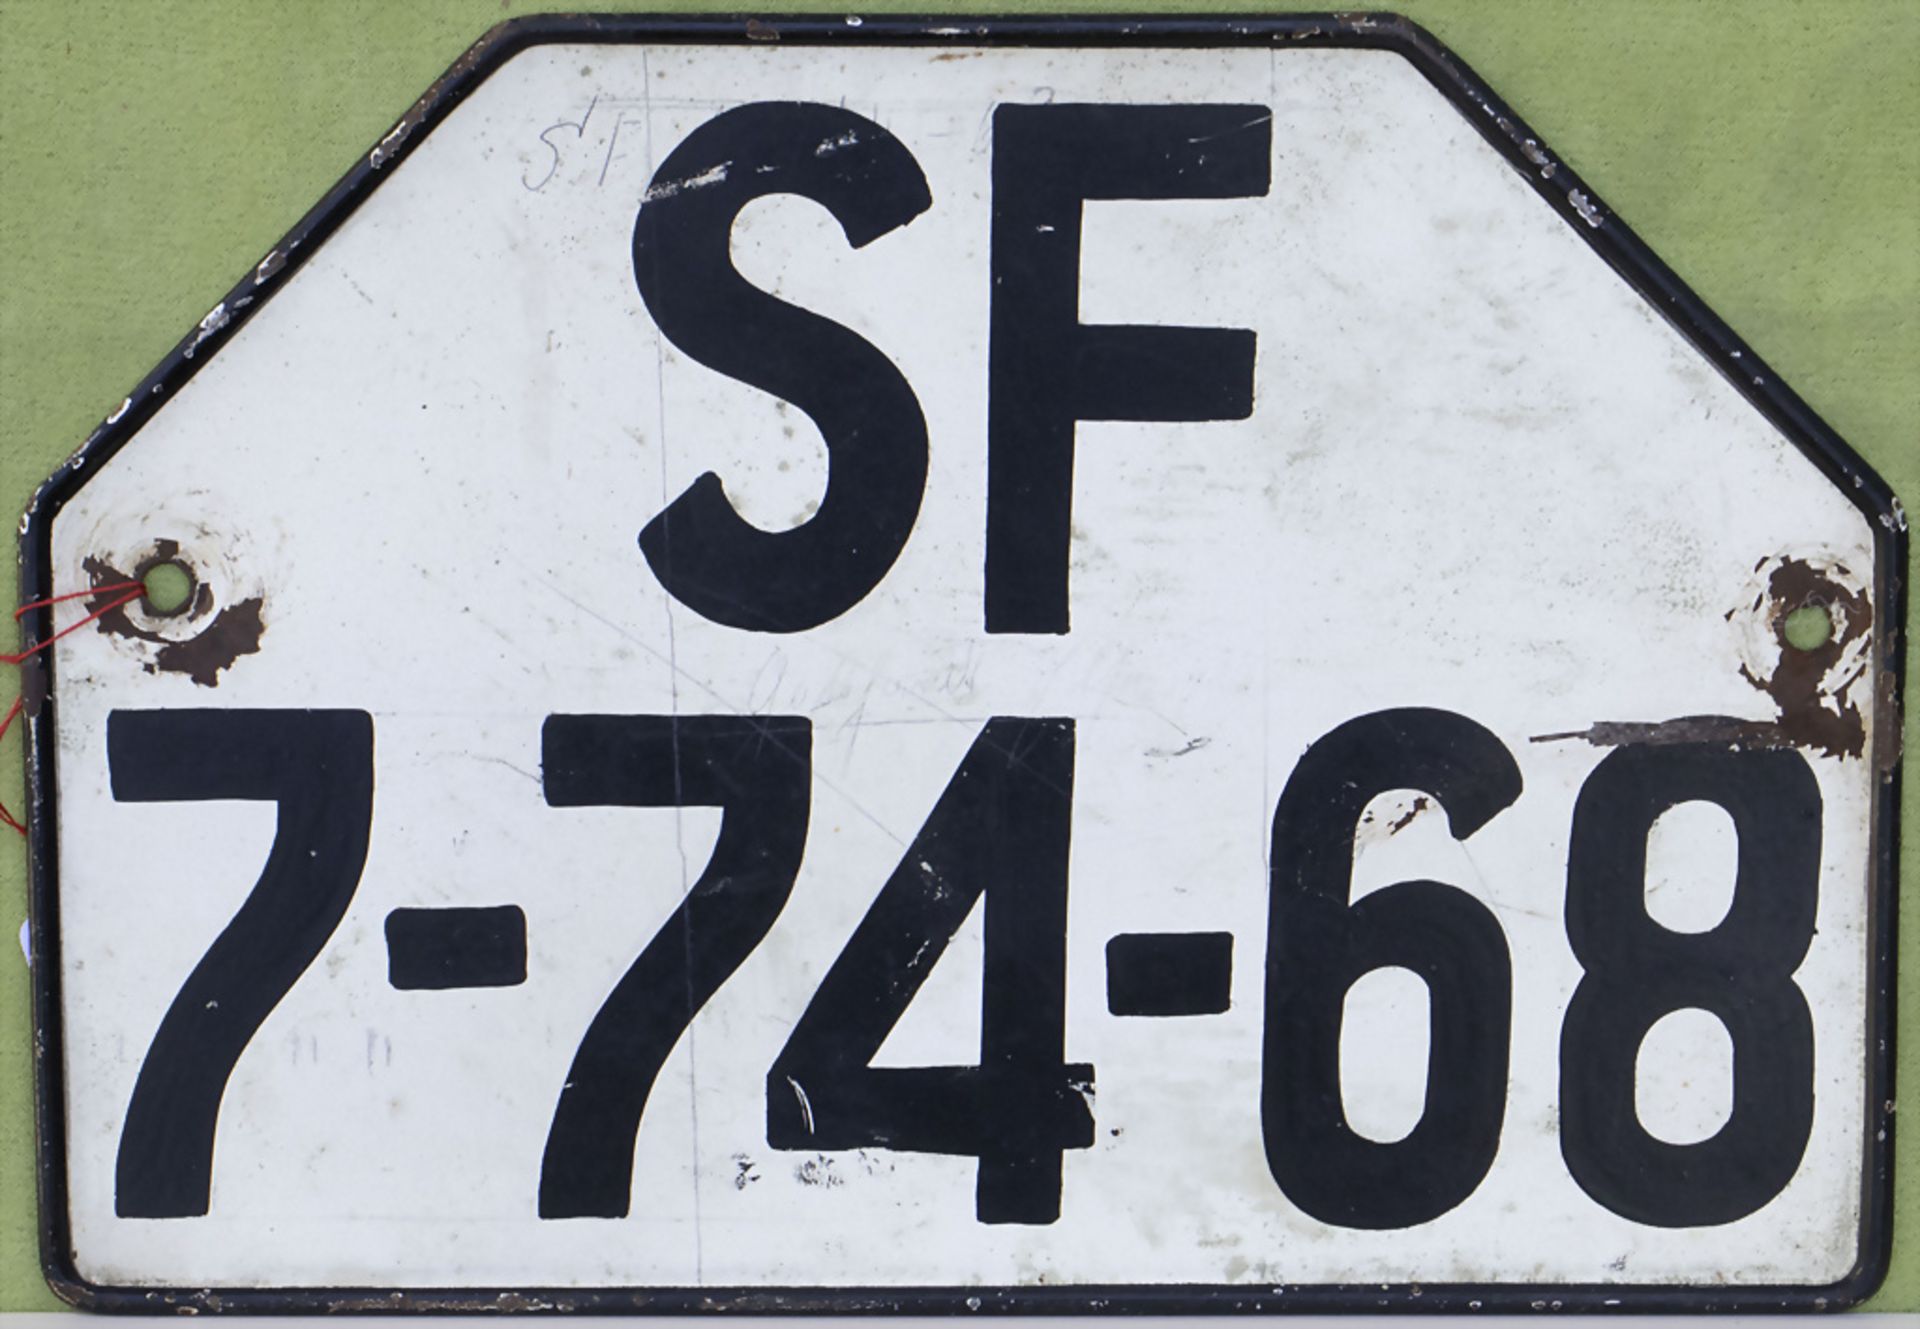 Historisches Nummernschild Kfz Kennzeichen / Historical license plate, deutsch, Mitte 20. Jh.